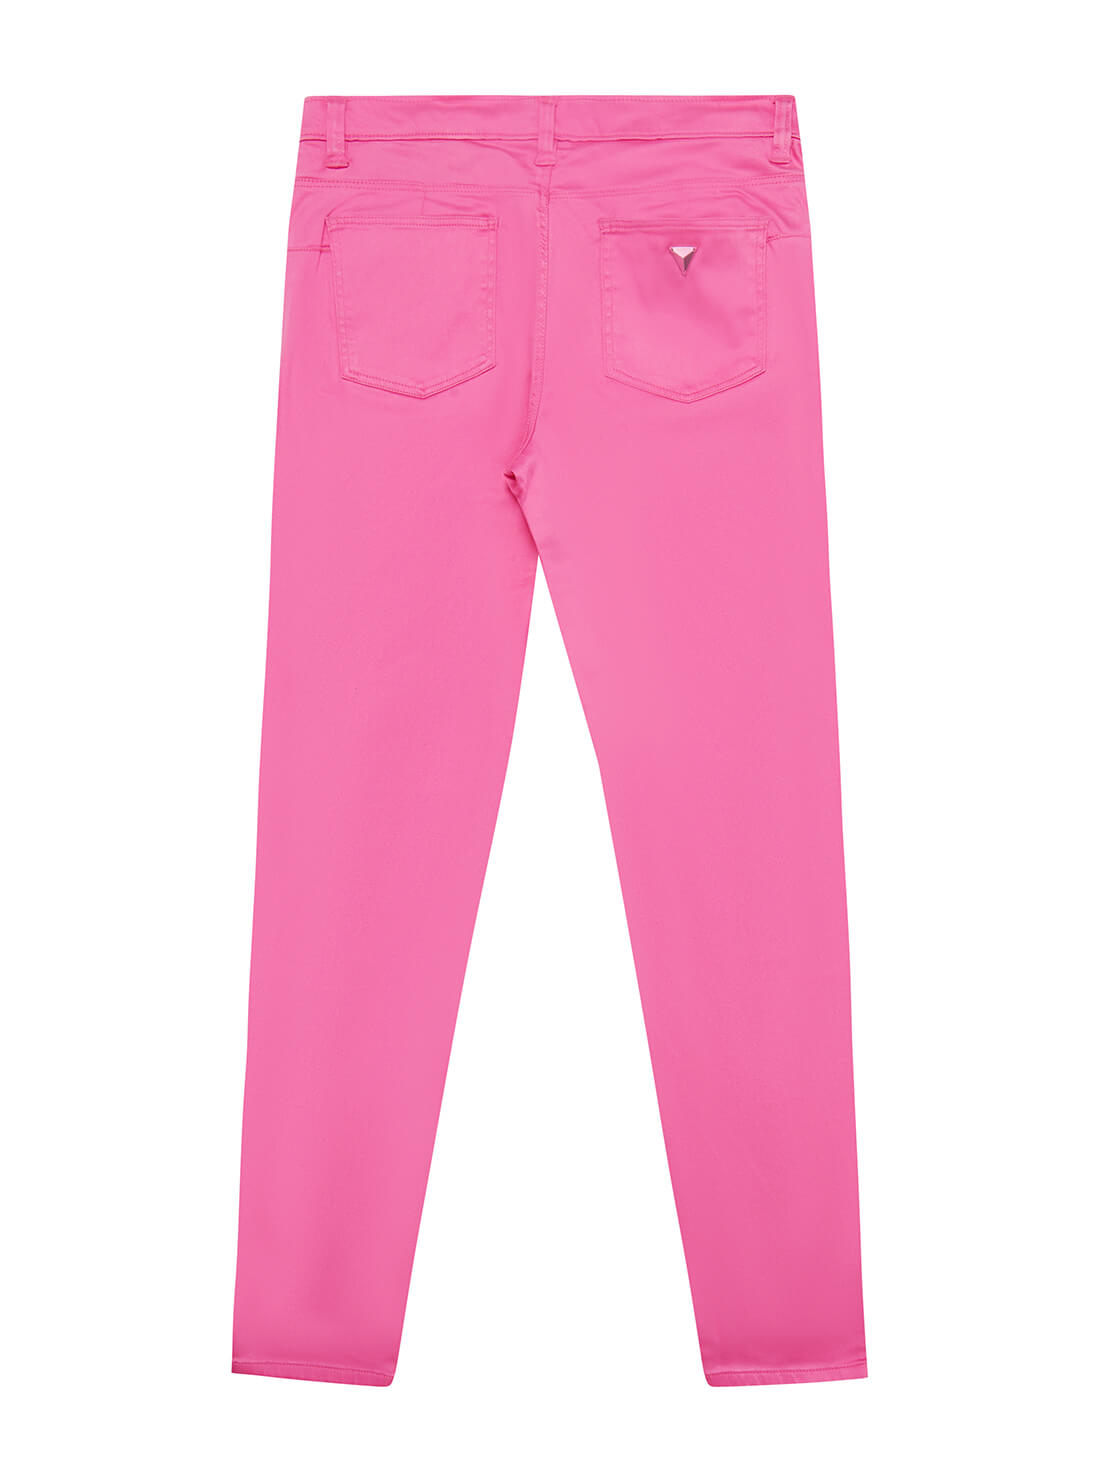 GUESS Big Girls Pink Stretch Pants (7-16) J1YB05WB7X0 Back View